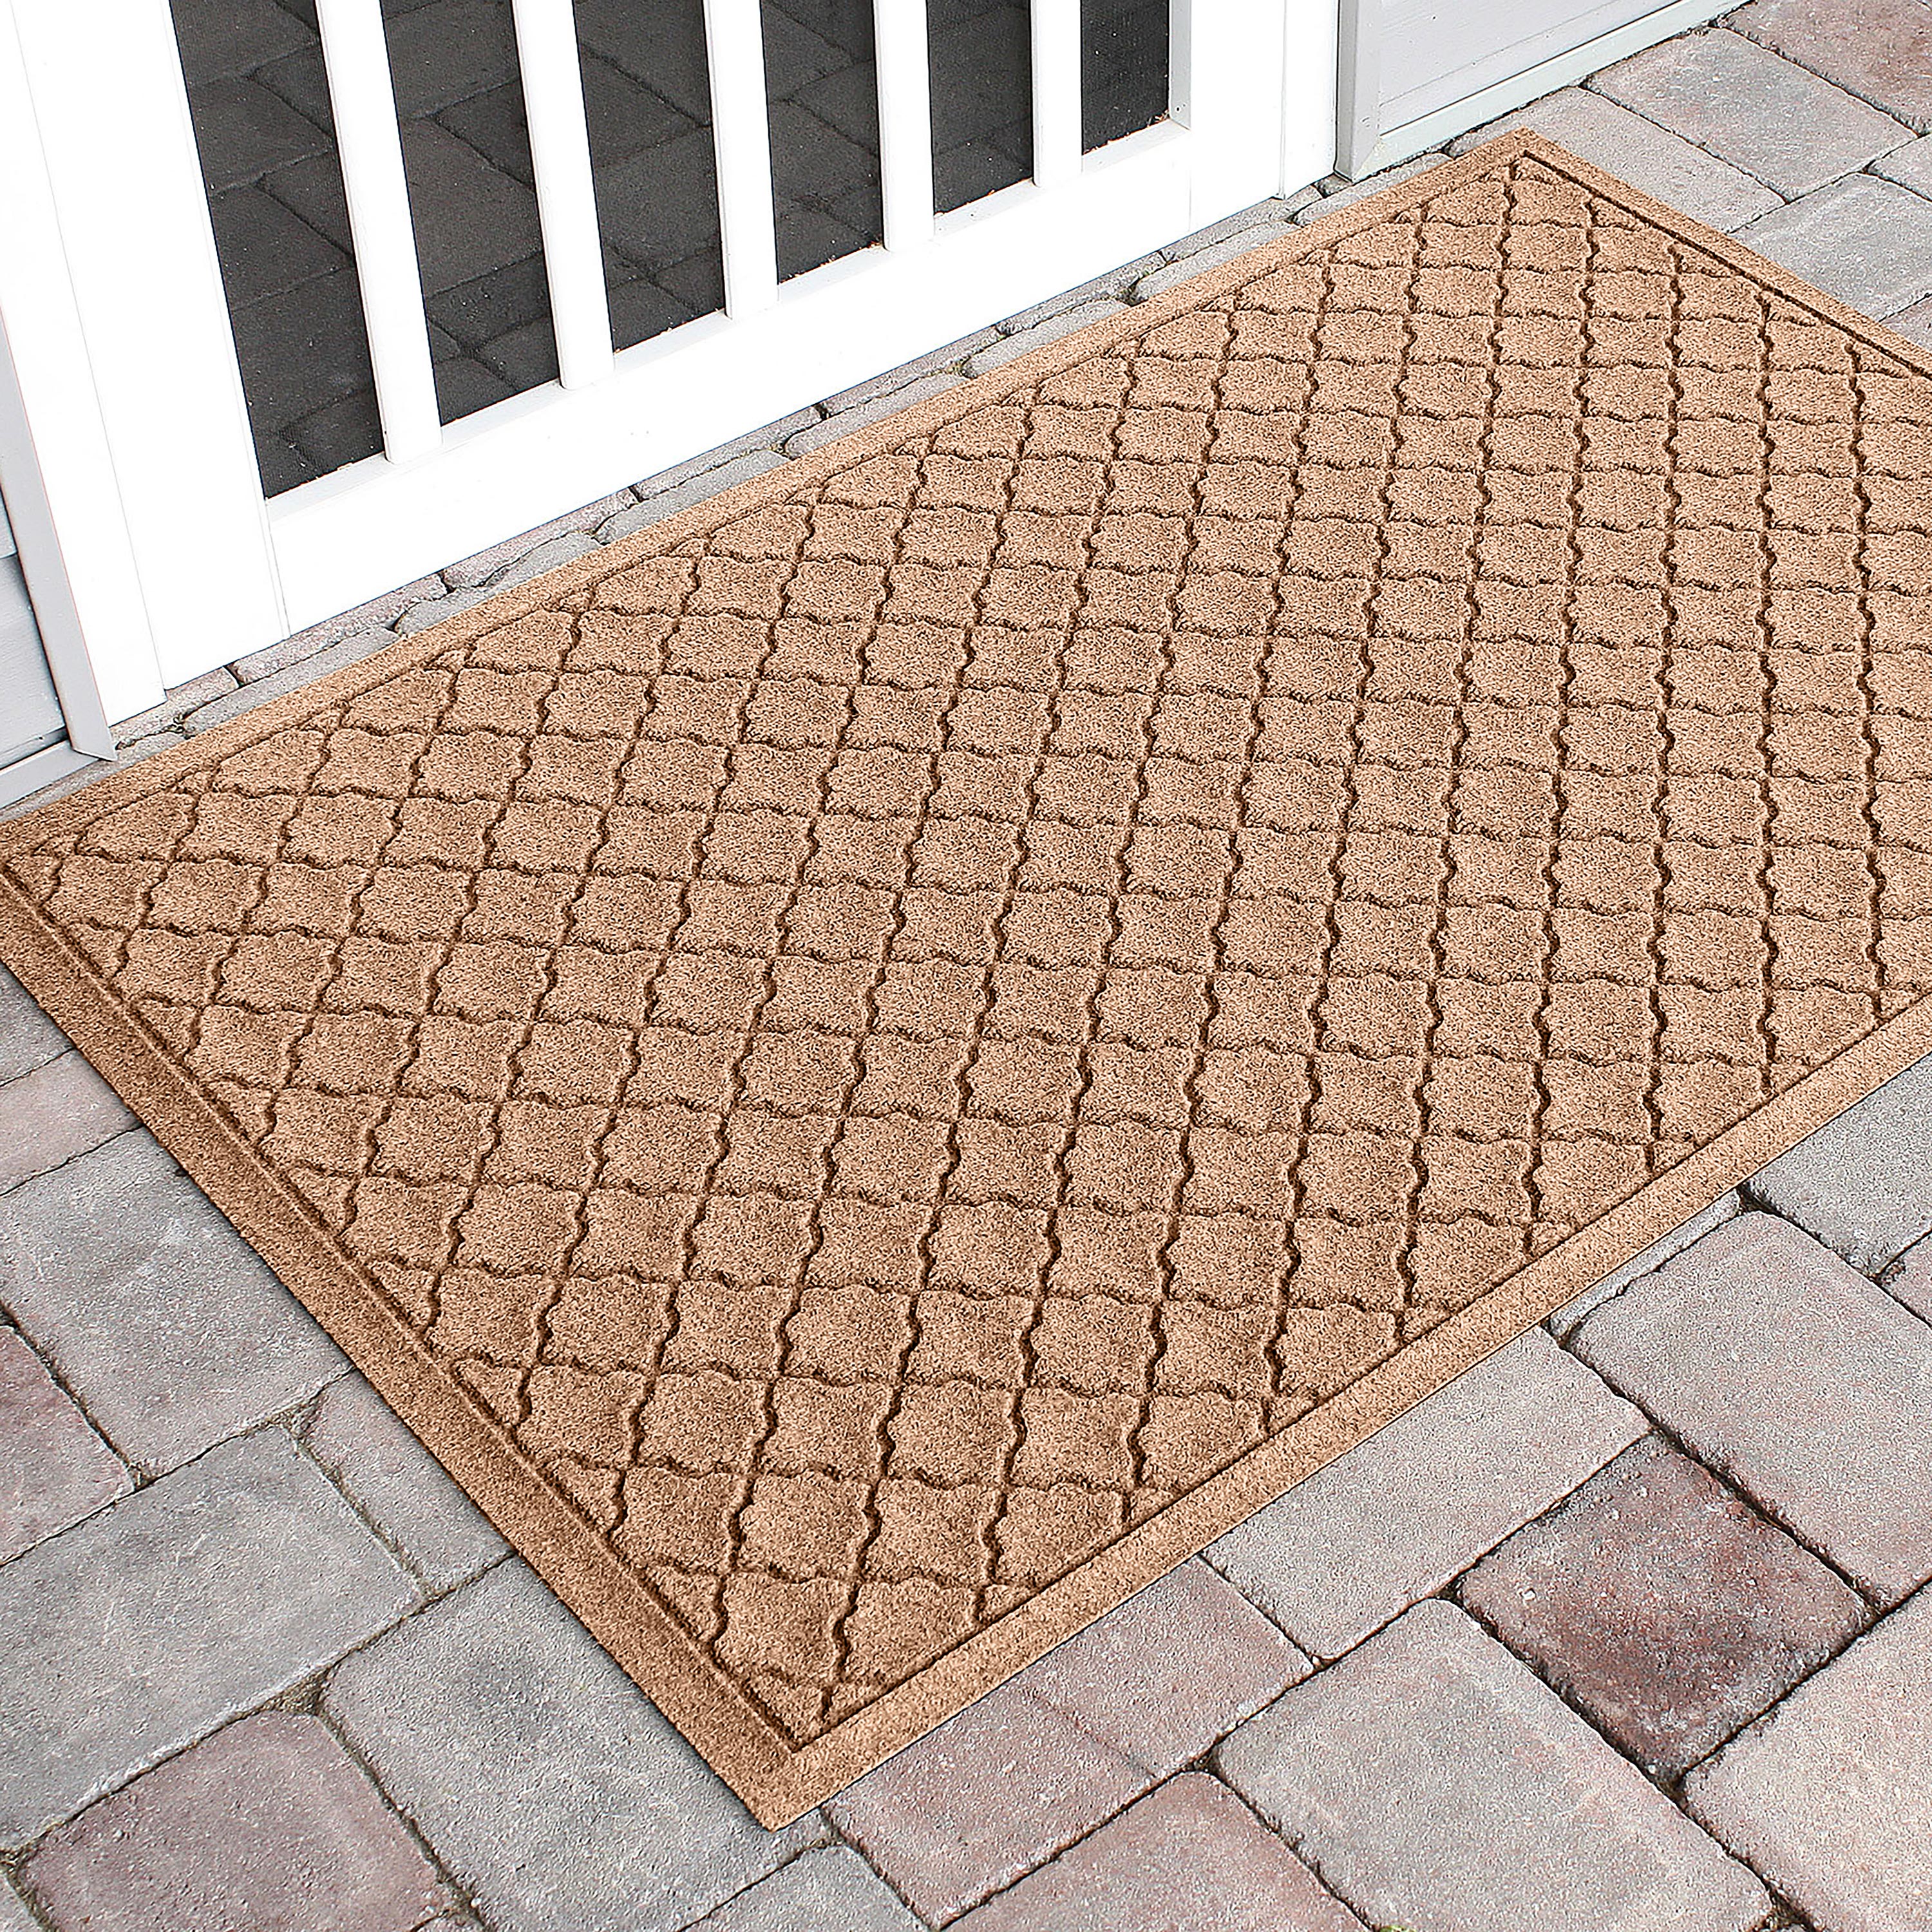 WATERHOG Indoor/Outdoor Entrance Floor Mat